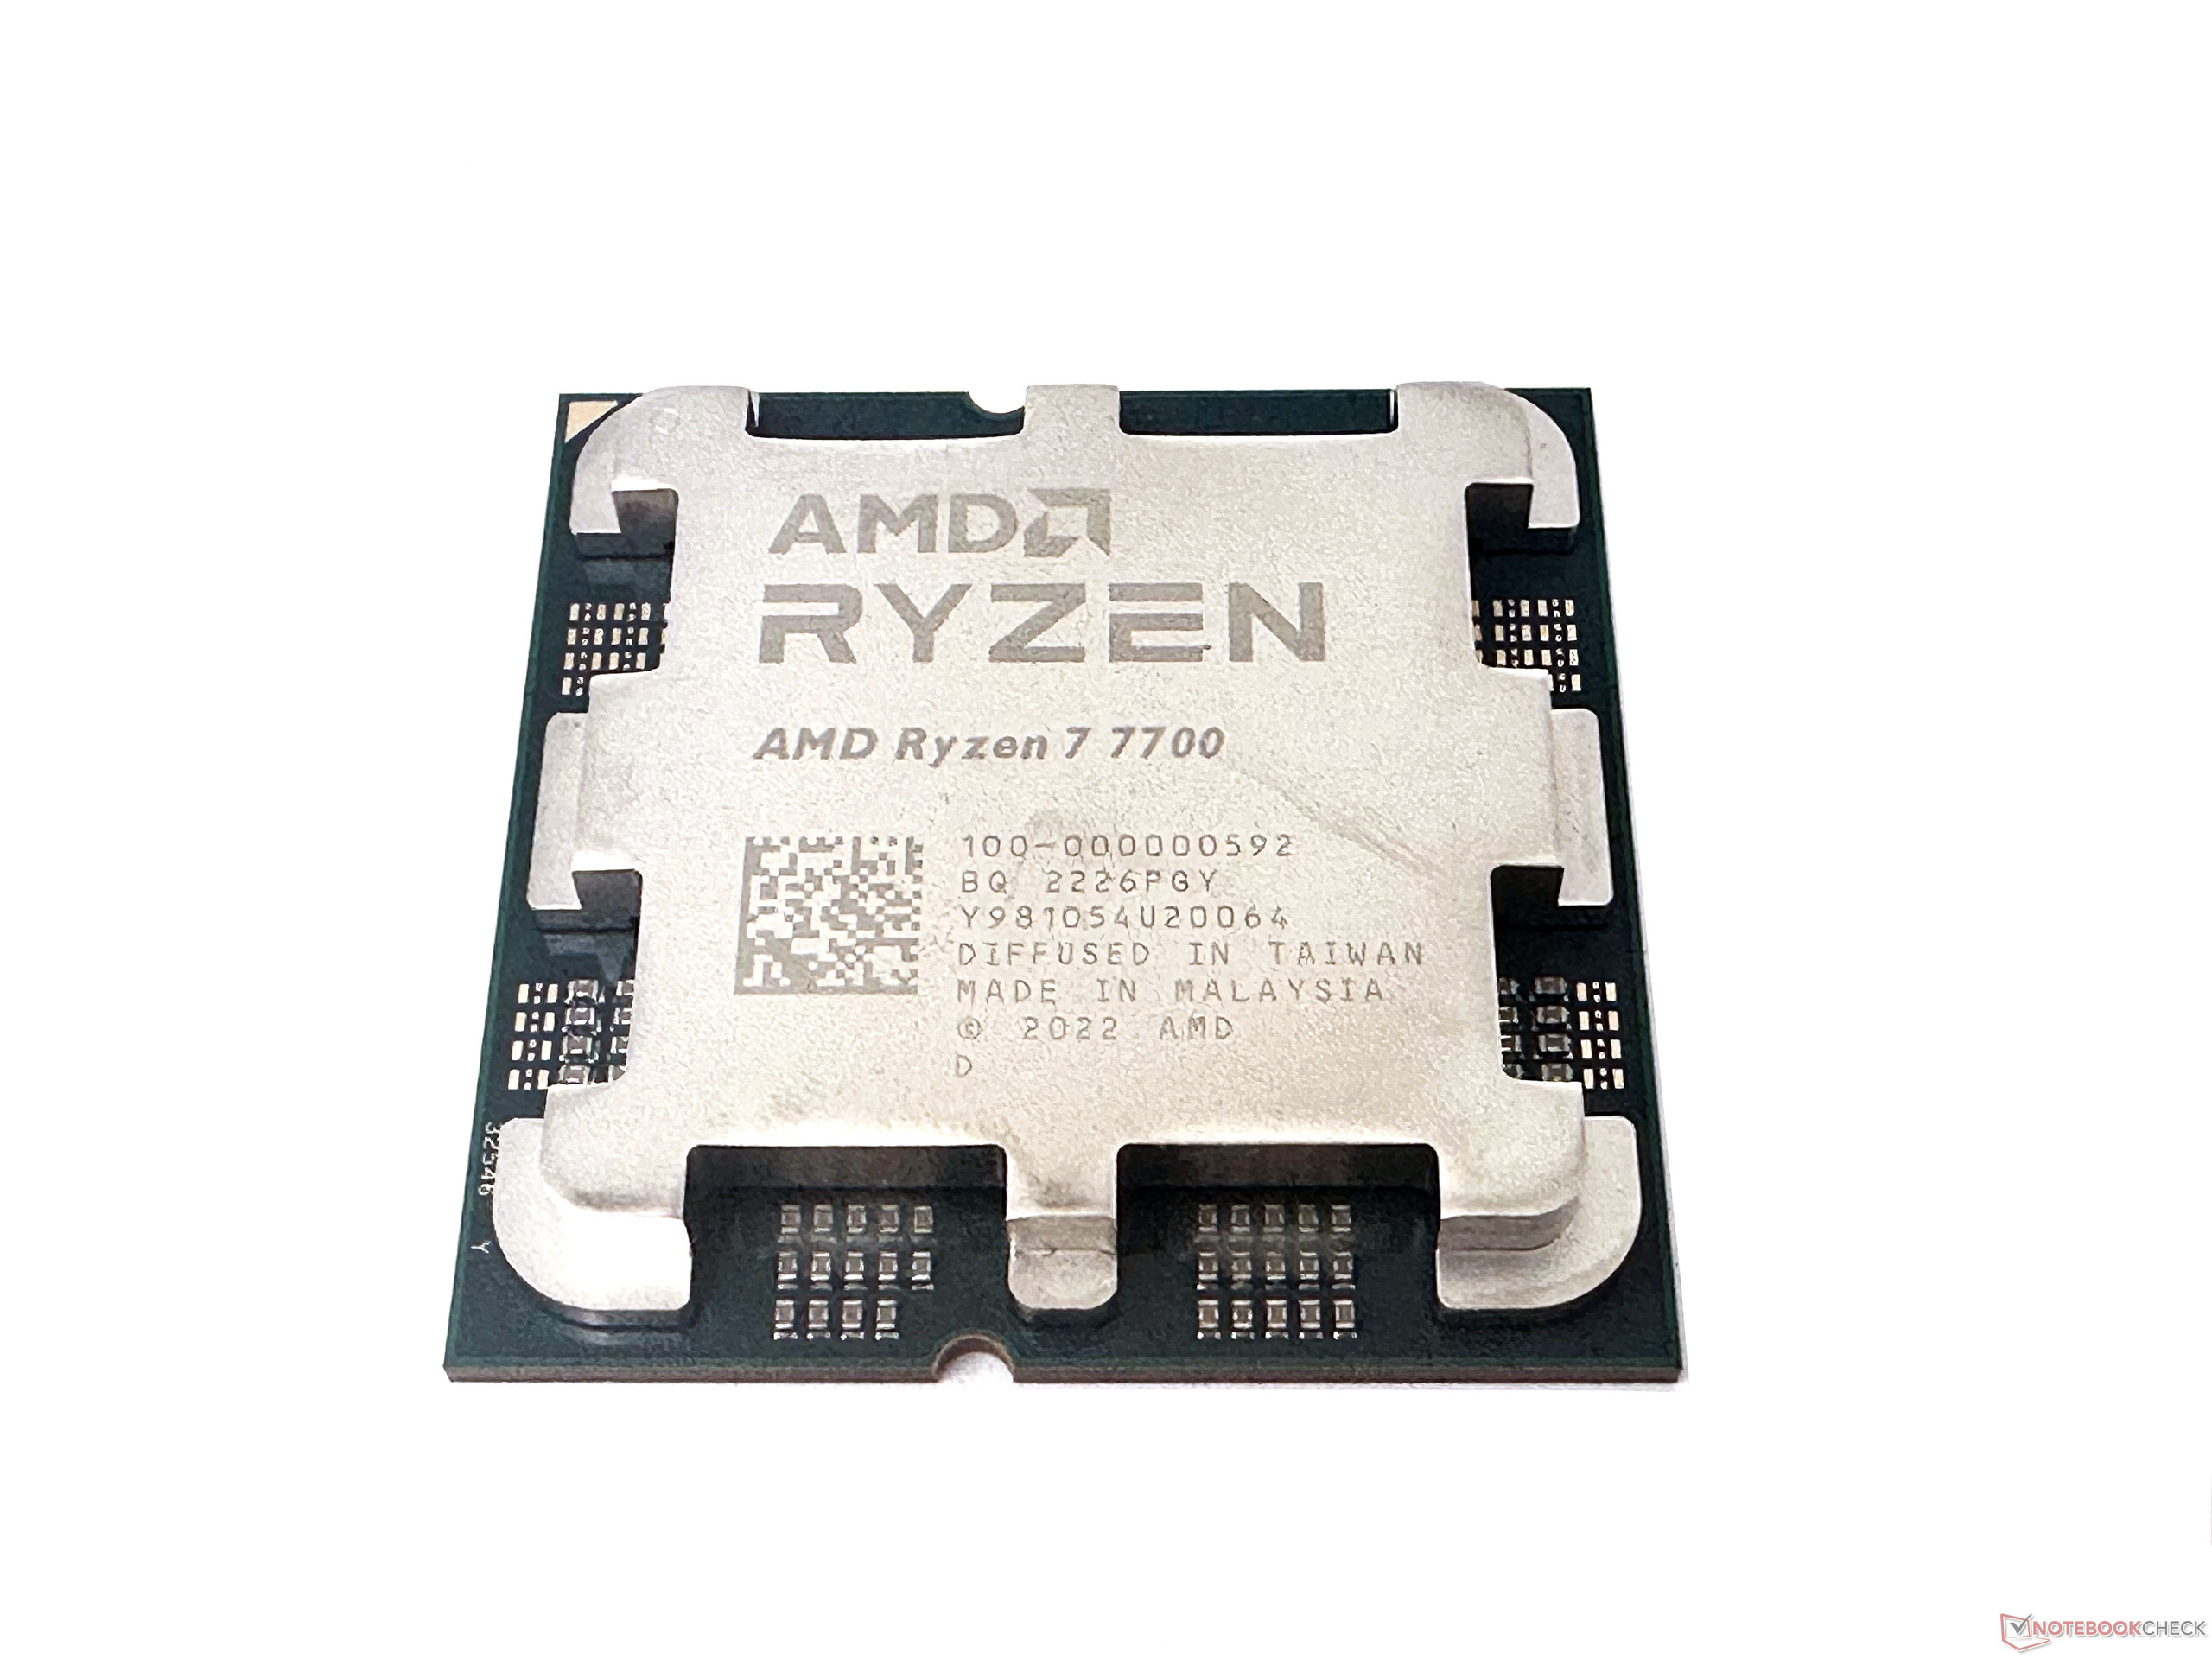  Buy AMD 7000 Series Ryzen 7 7700 Desktop Processor 8